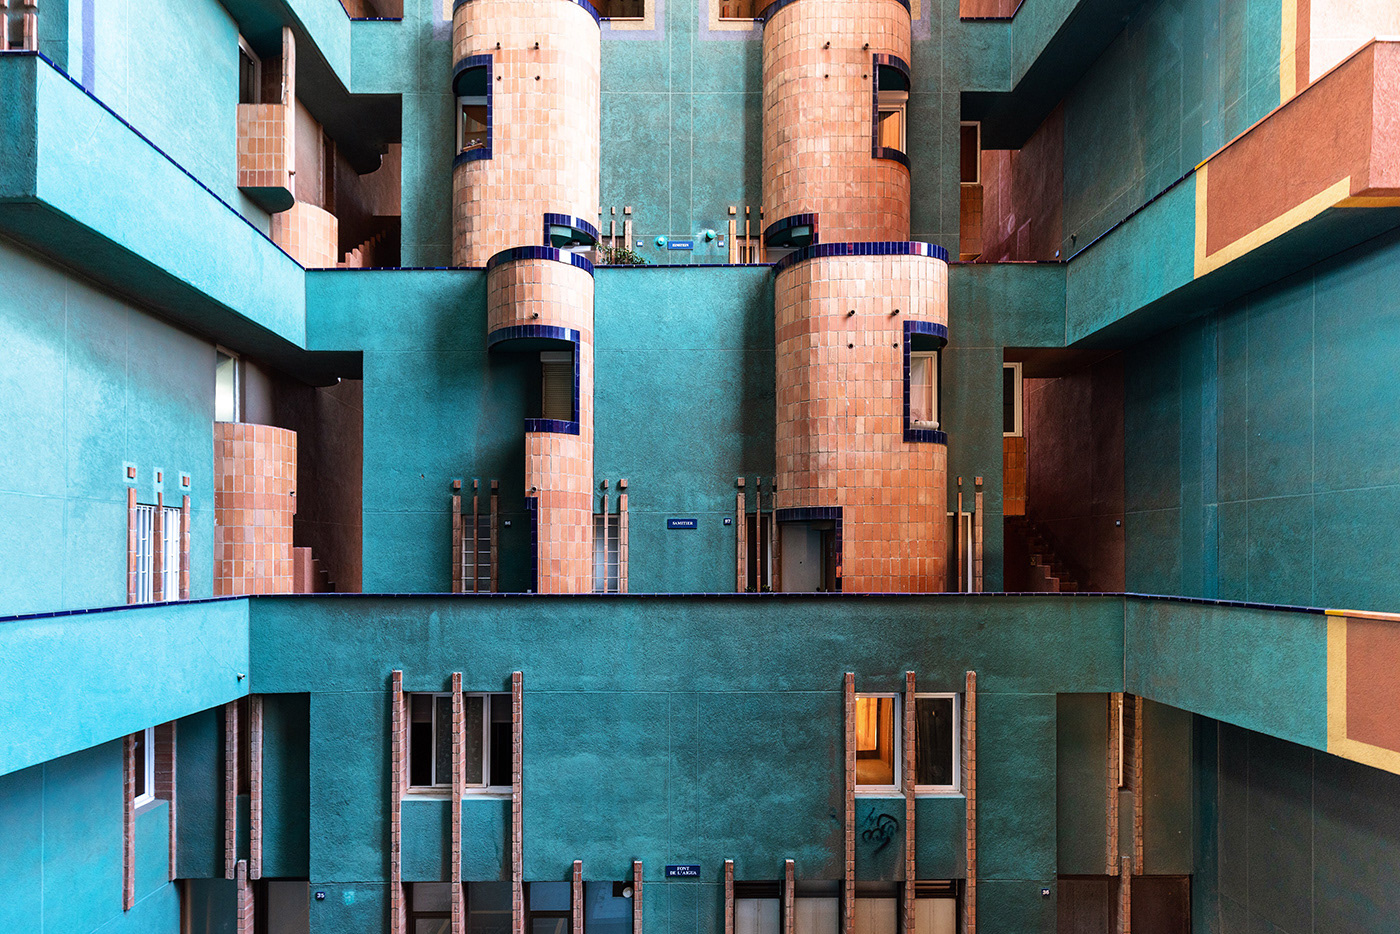 bofill walden7 barcelona architecture arquitectura postmodern concrete red spain design